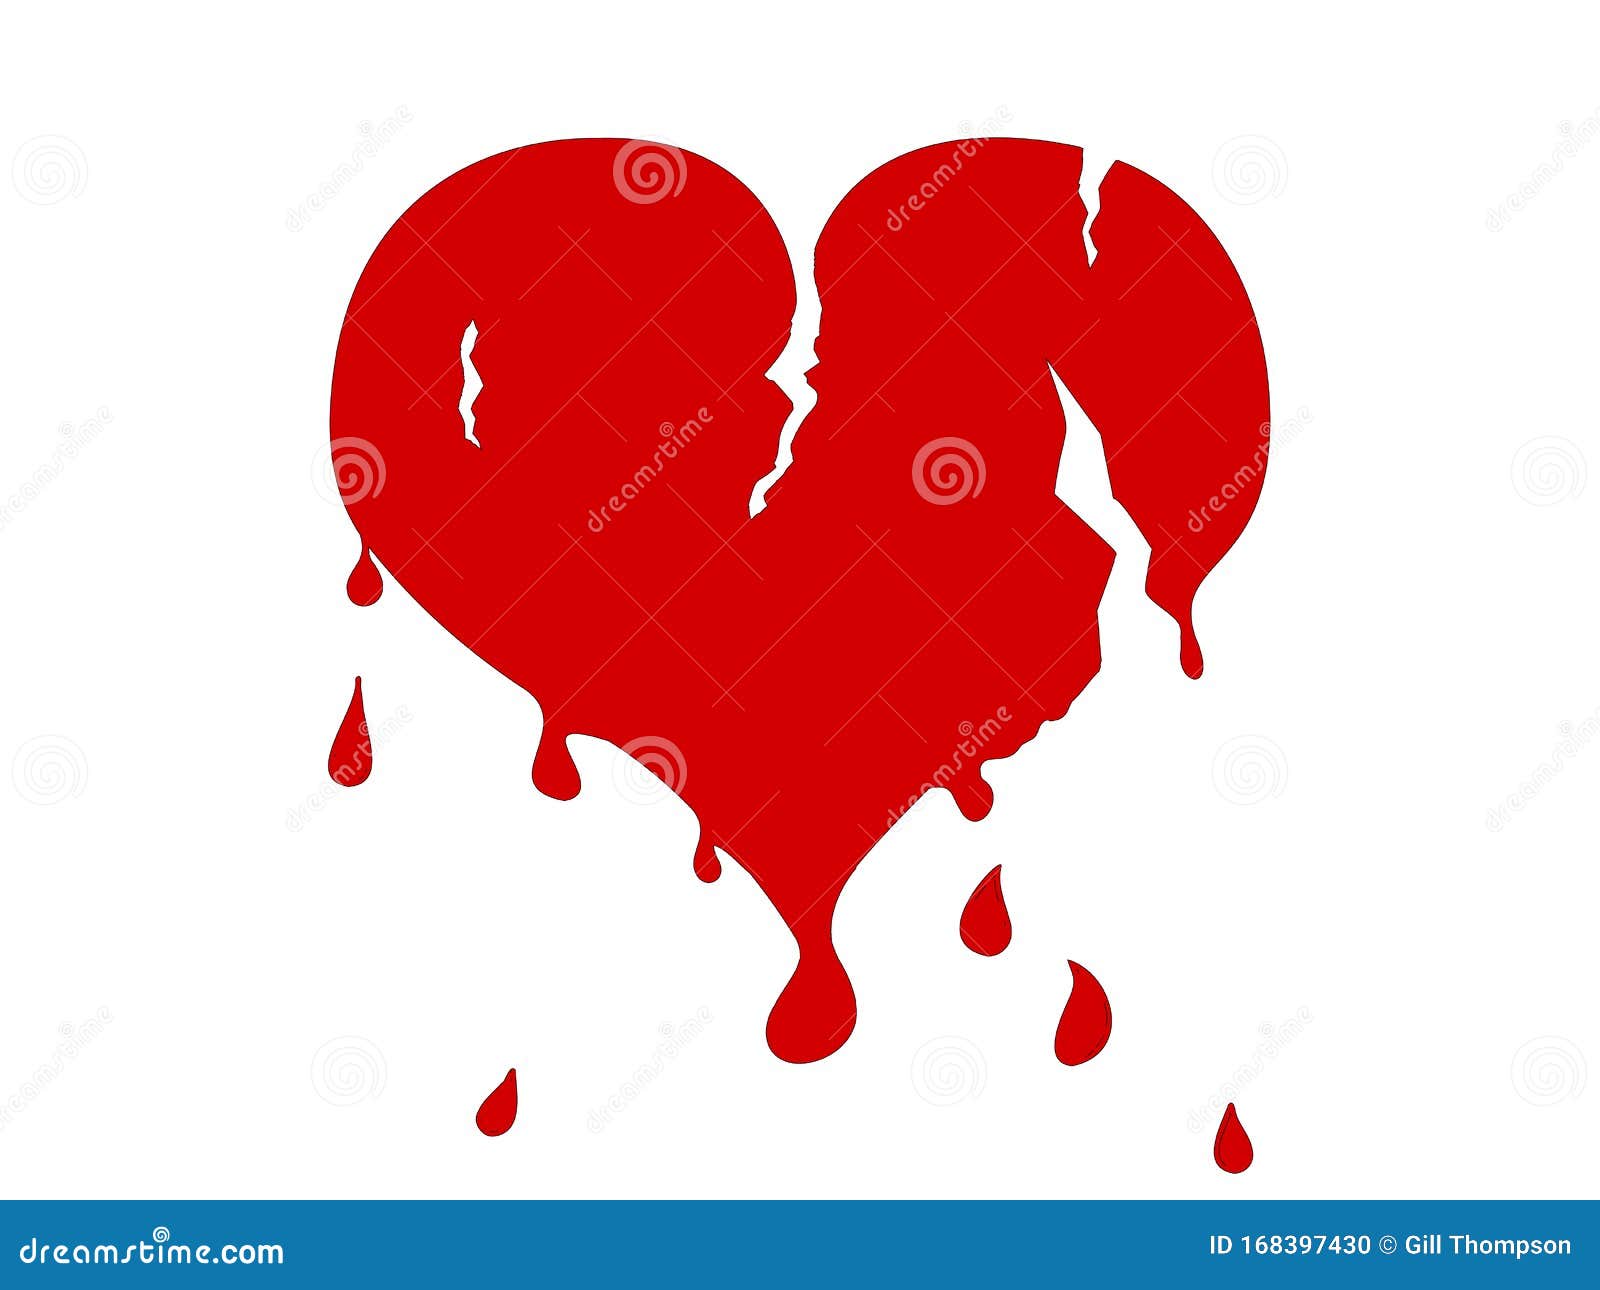 Что такое слепое сердце. Рваное сердце вектор. Сердце с разрывом валентинка. Вы́рвала сердце.